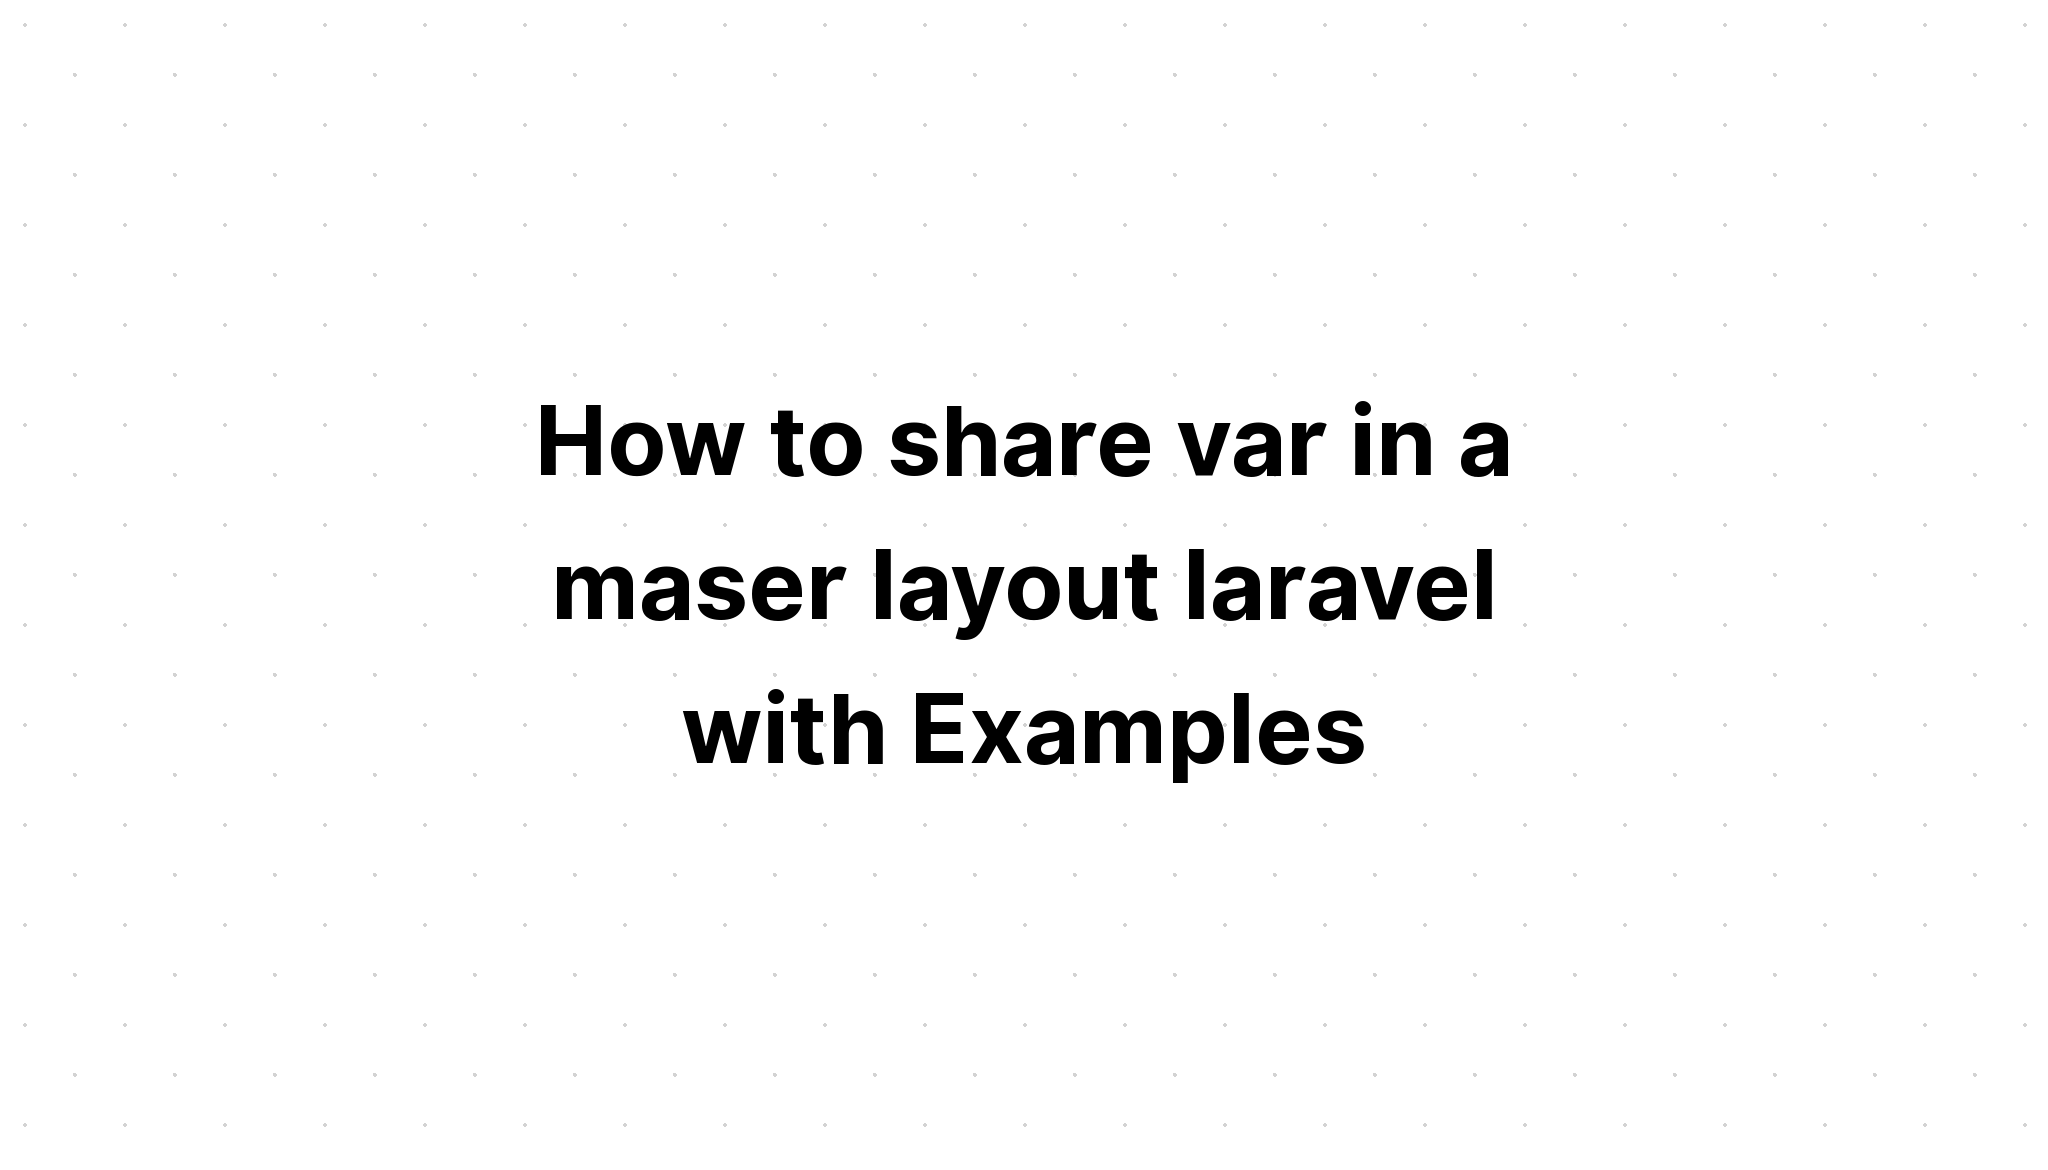 Cách chia sẻ var trong laravel bố cục maser với các ví dụ